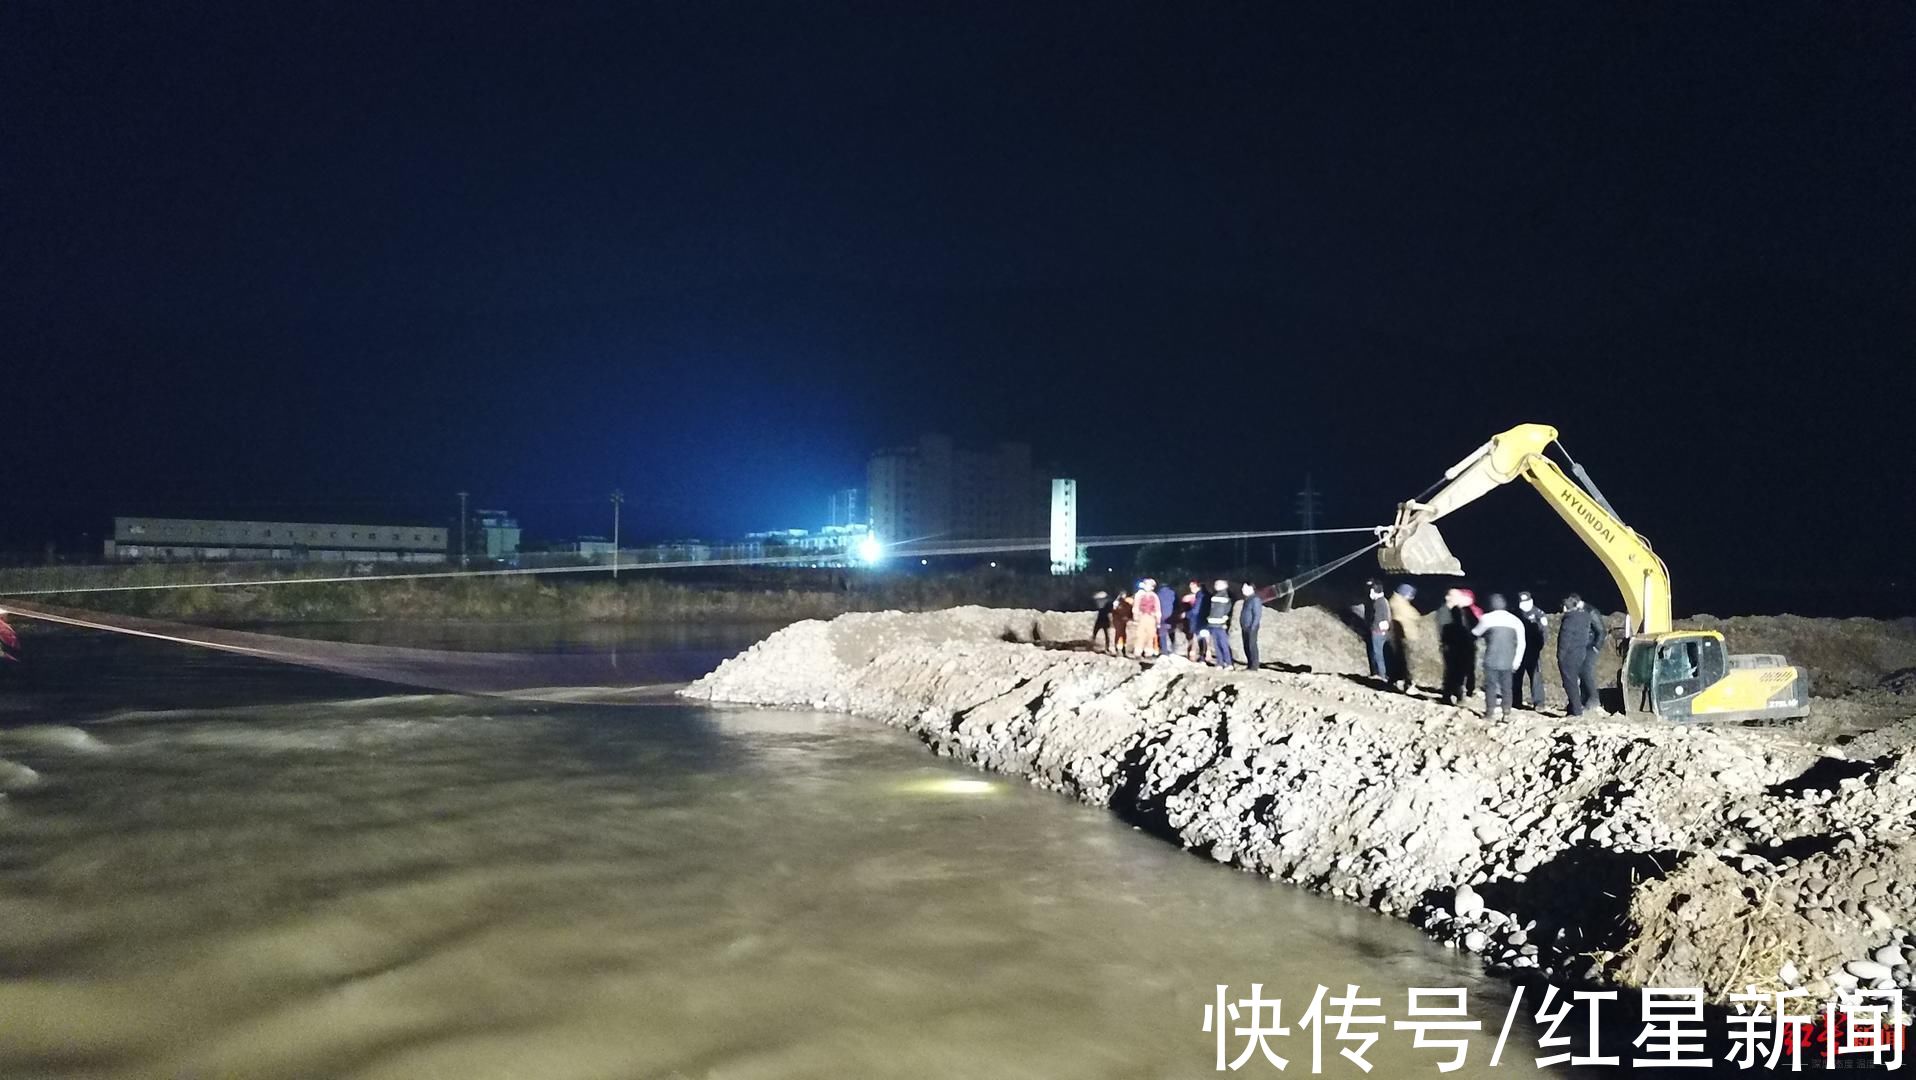 孤岛|四川米易9名工人被困河中“孤岛”消防星夜拉绳救援